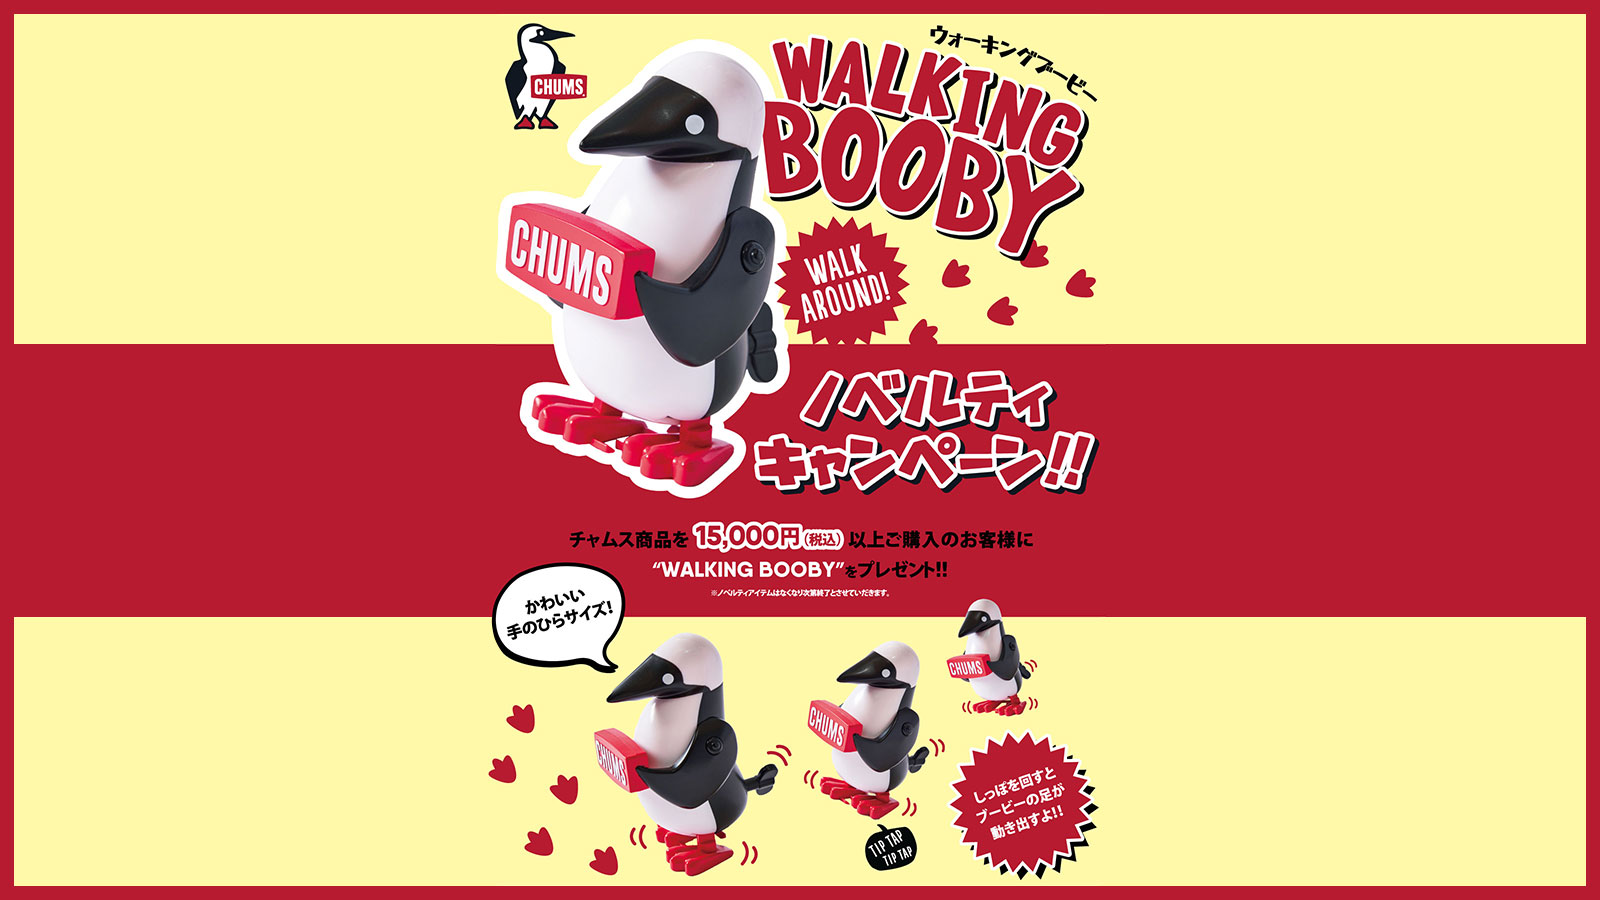 【CHUMS(チャムス)】WALKING BOOBY ノベルティキャンペーン